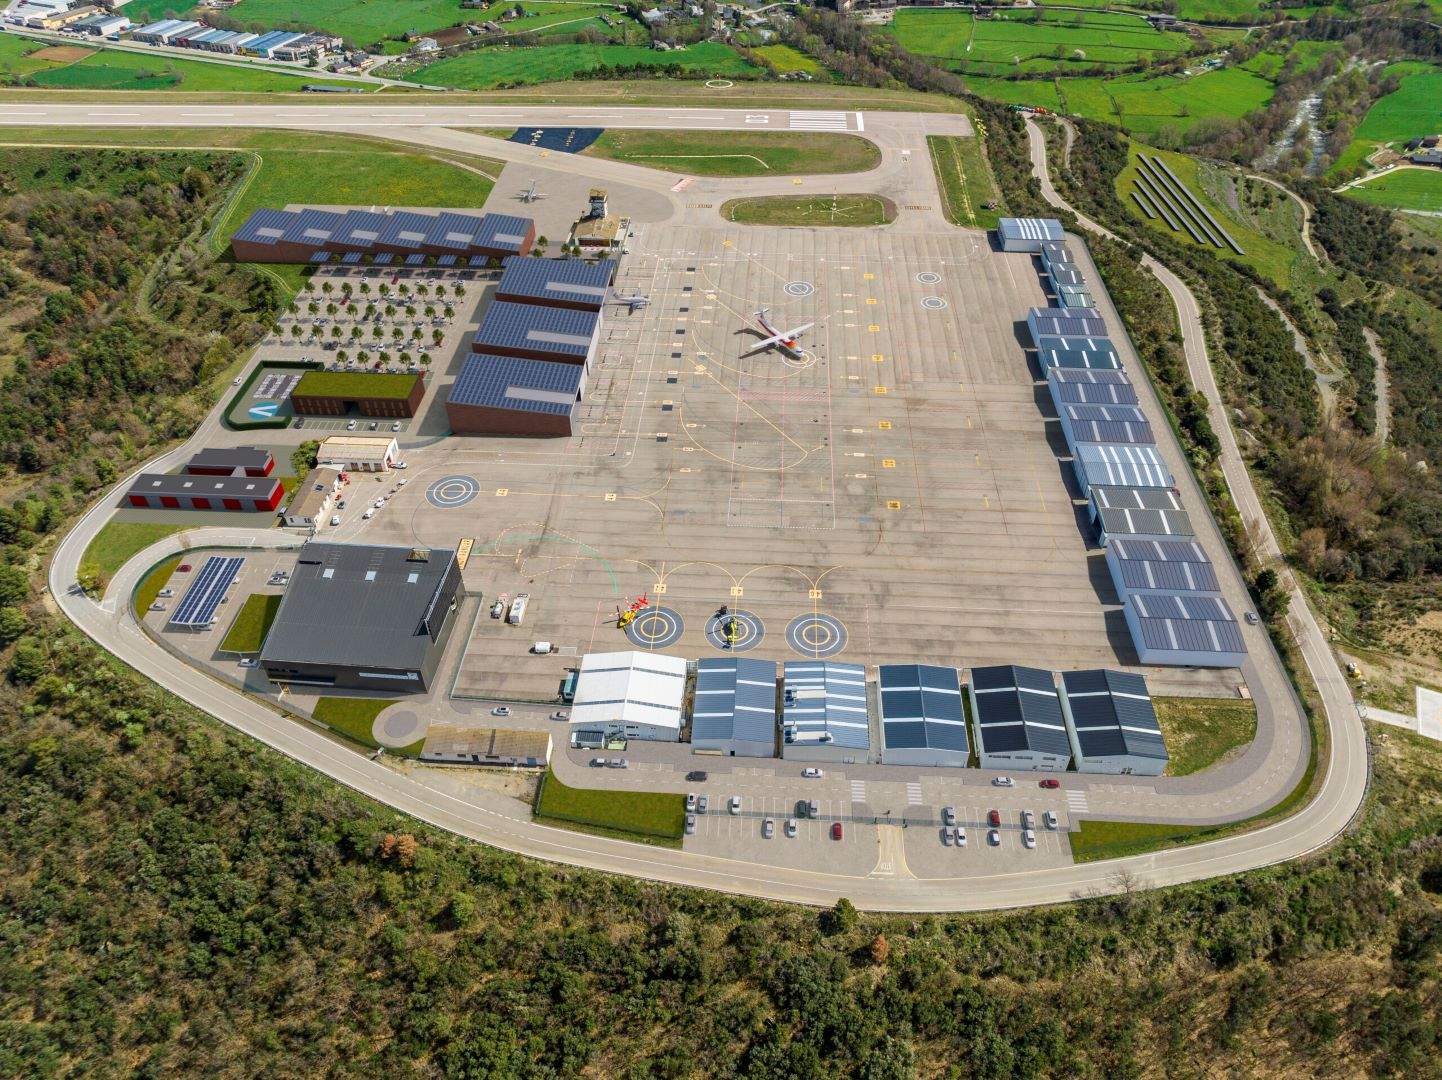 L'aeroport d'Andorra - La Seu d'Urgell preveu una ampliació amb una nova zona per a 9 hangars